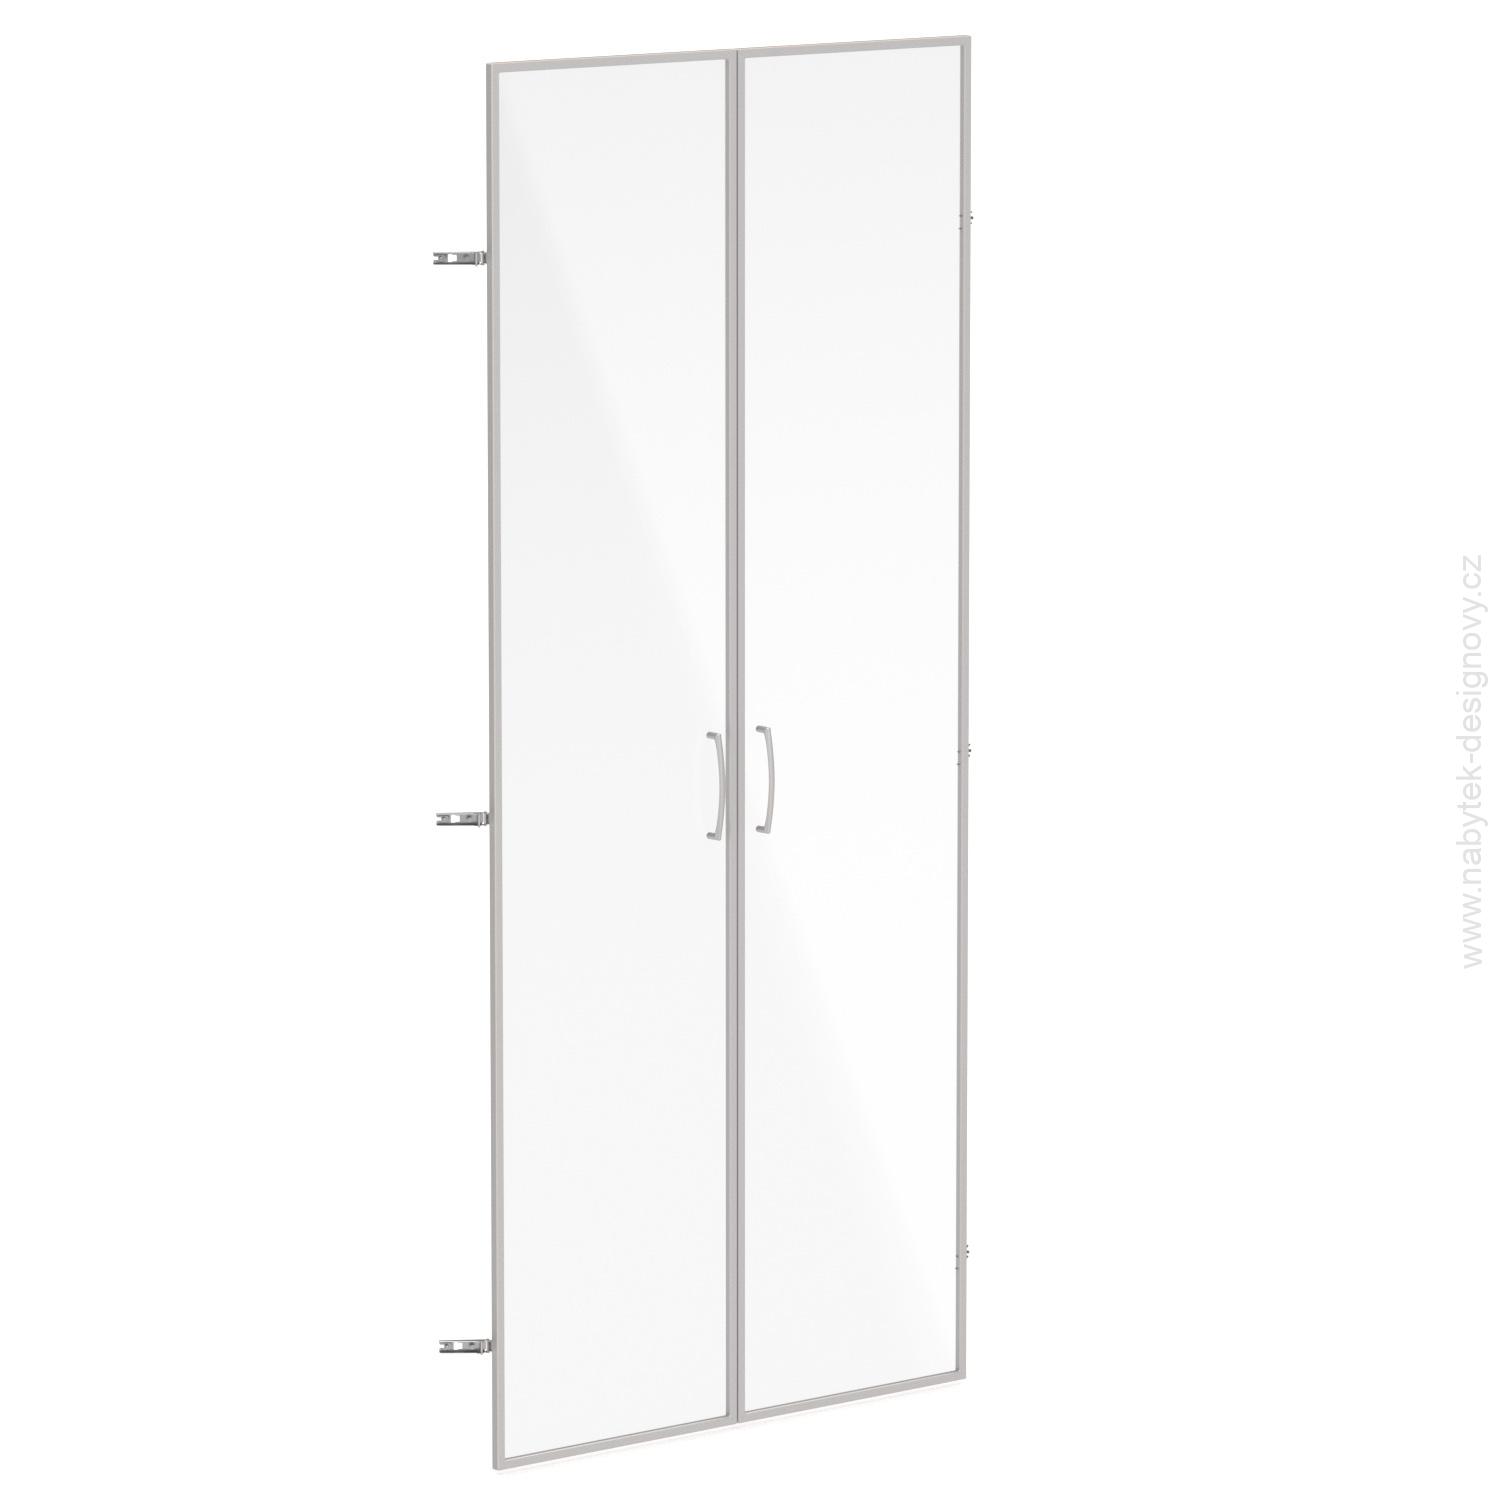 Skleněné dveře v AL rámu, výška 175,4cm, šířka 78,6cm